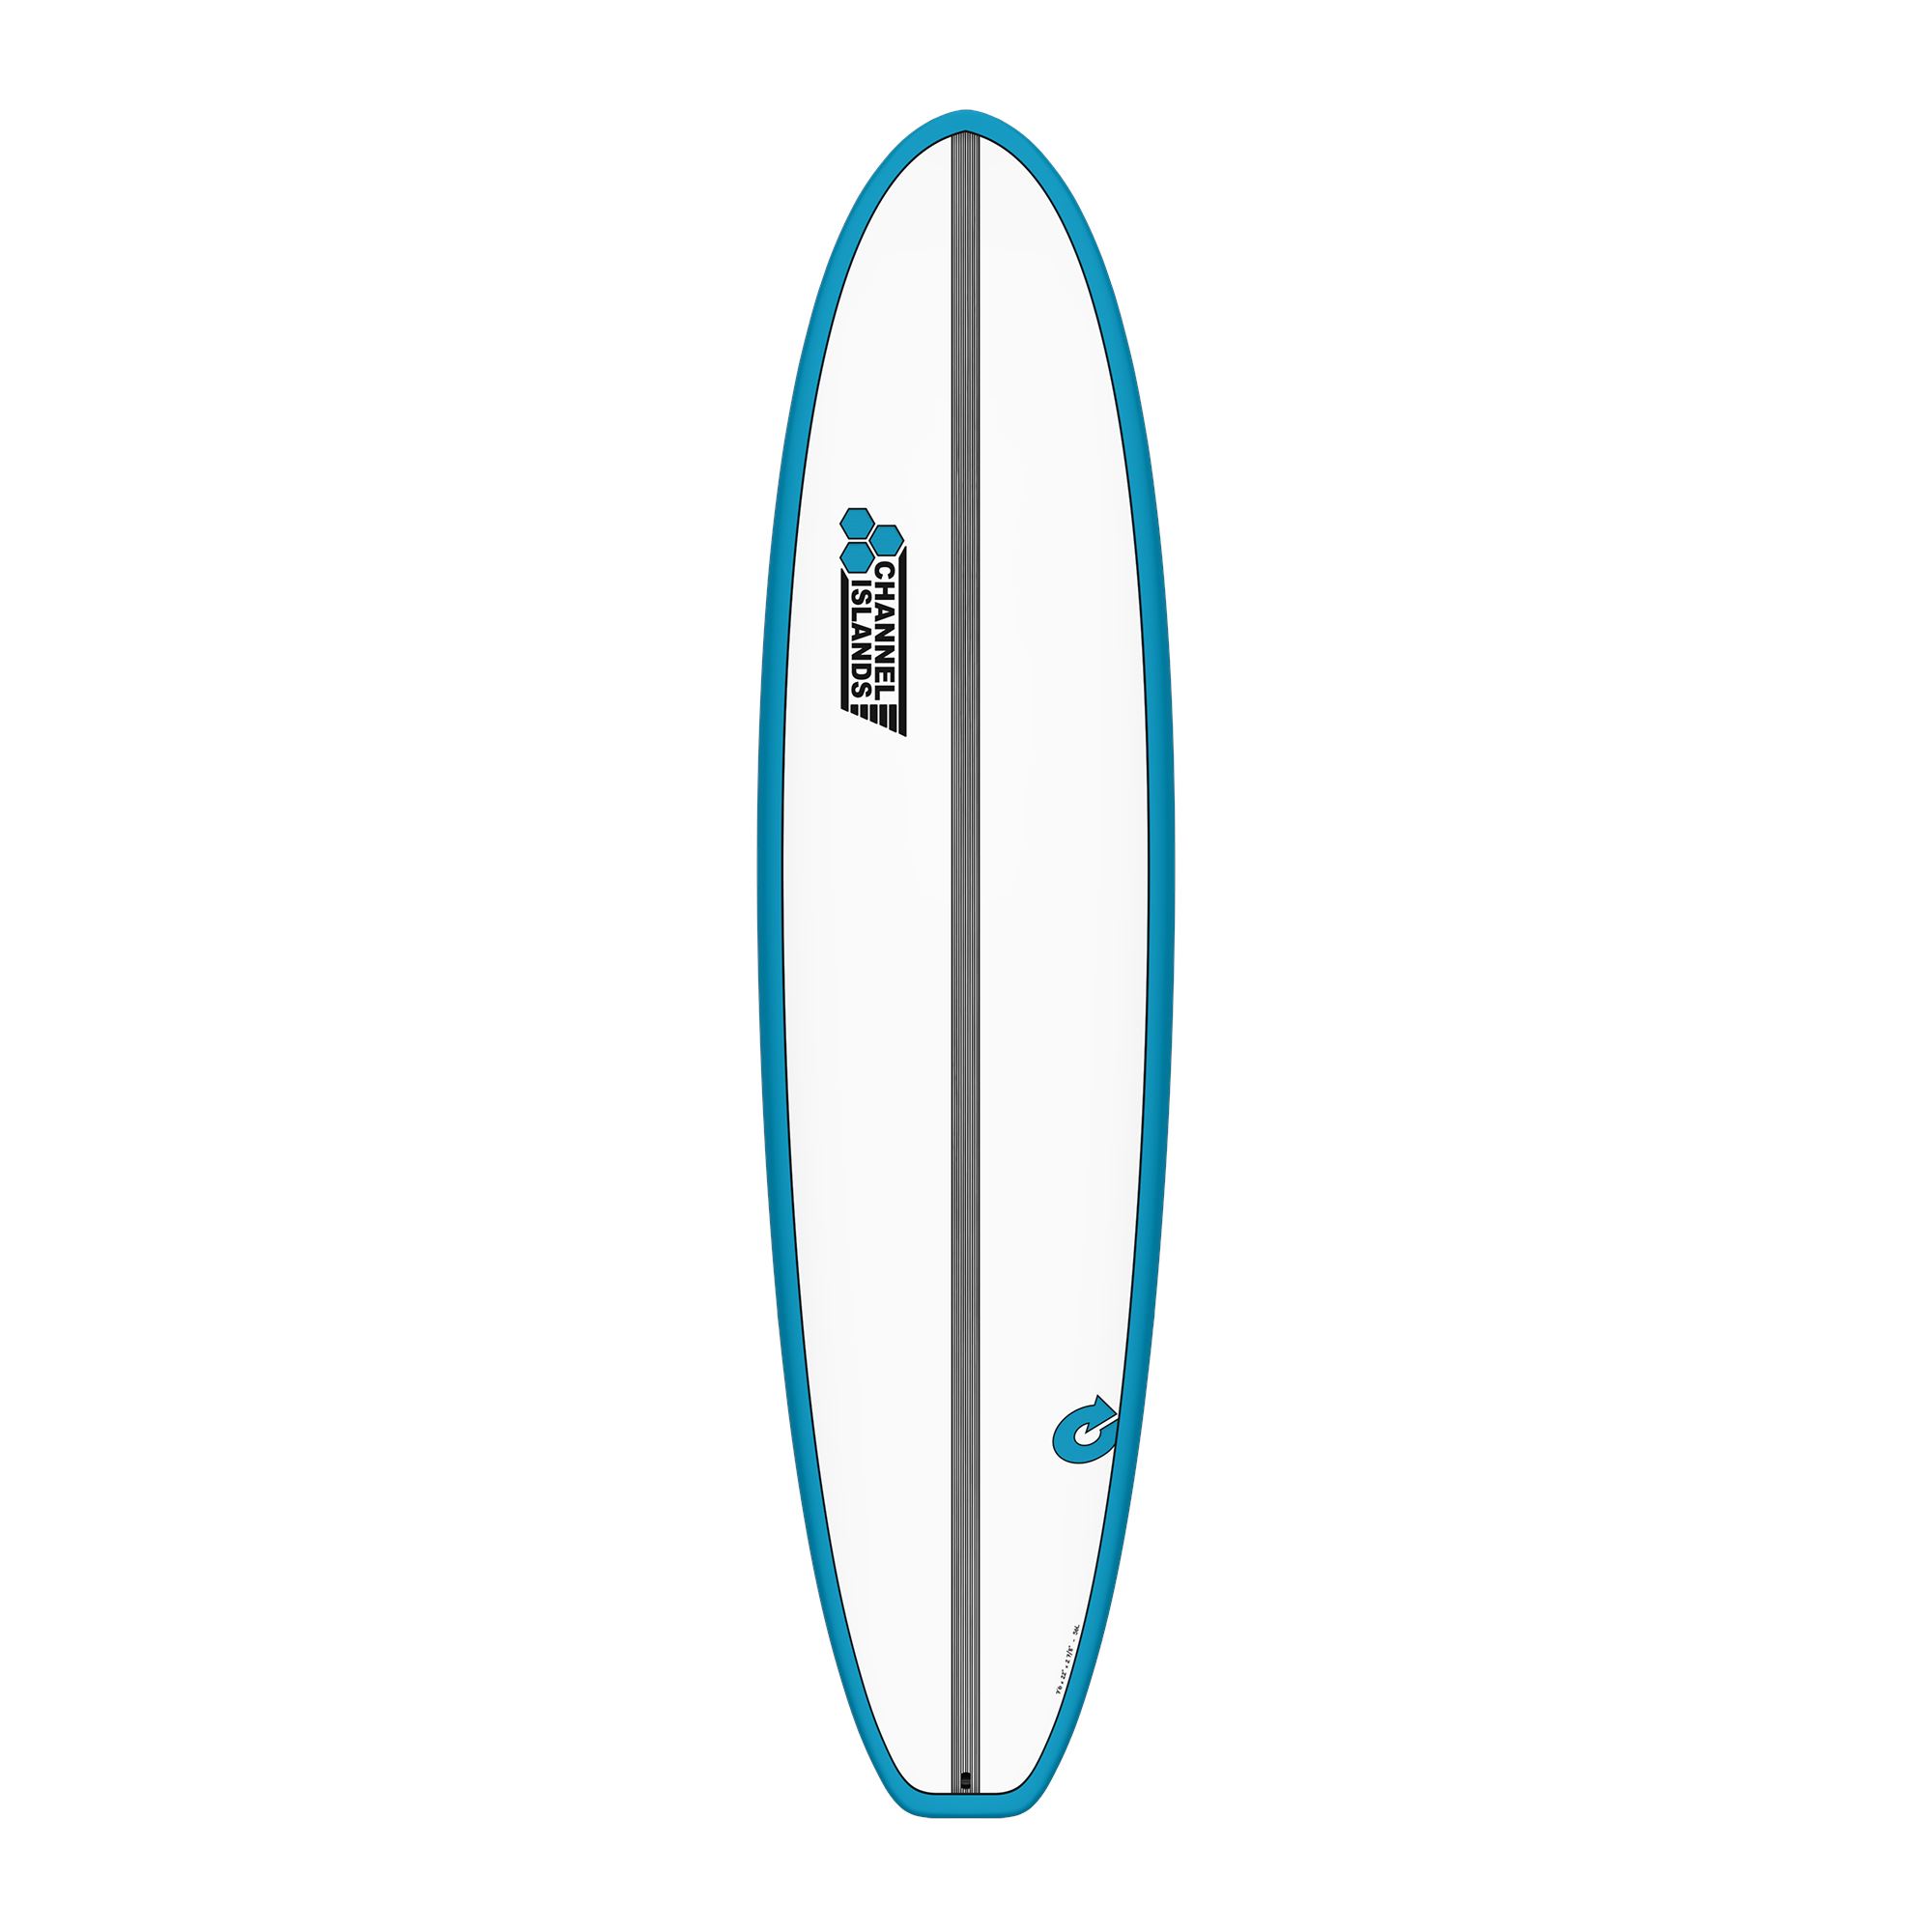 Surfboard CHANNEL ISLANDS X-lite2 Chancho 8.0 Blau Verkauf nur an autorisierte Channel Islands Dealer